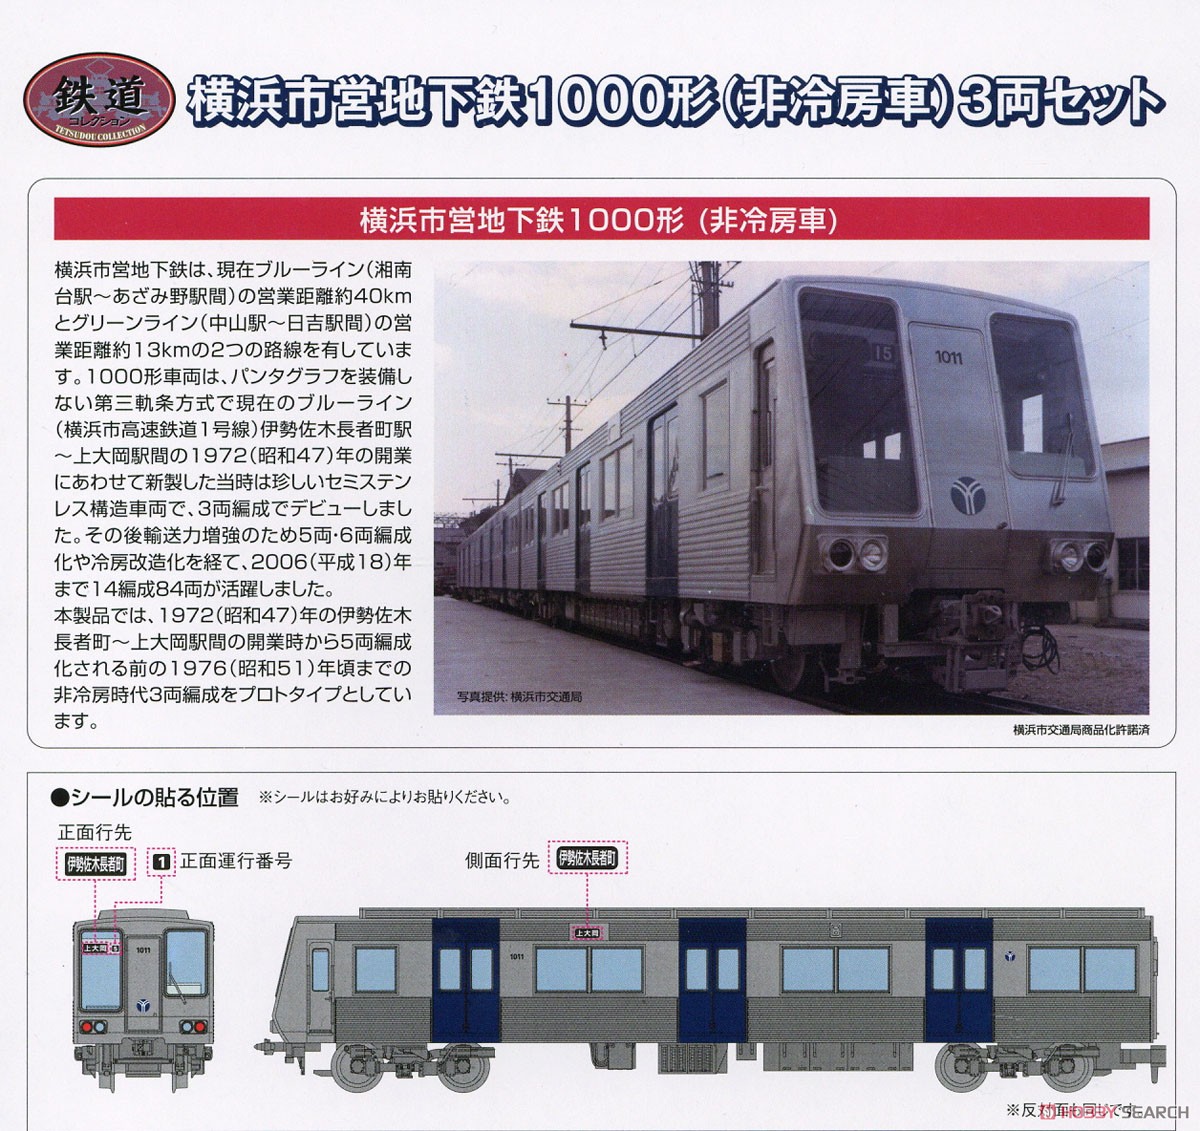 鉄道コレクション 横浜市営地下鉄 1000形 (非冷房車) 3両セット (3両セット) (鉄道模型) 解説1